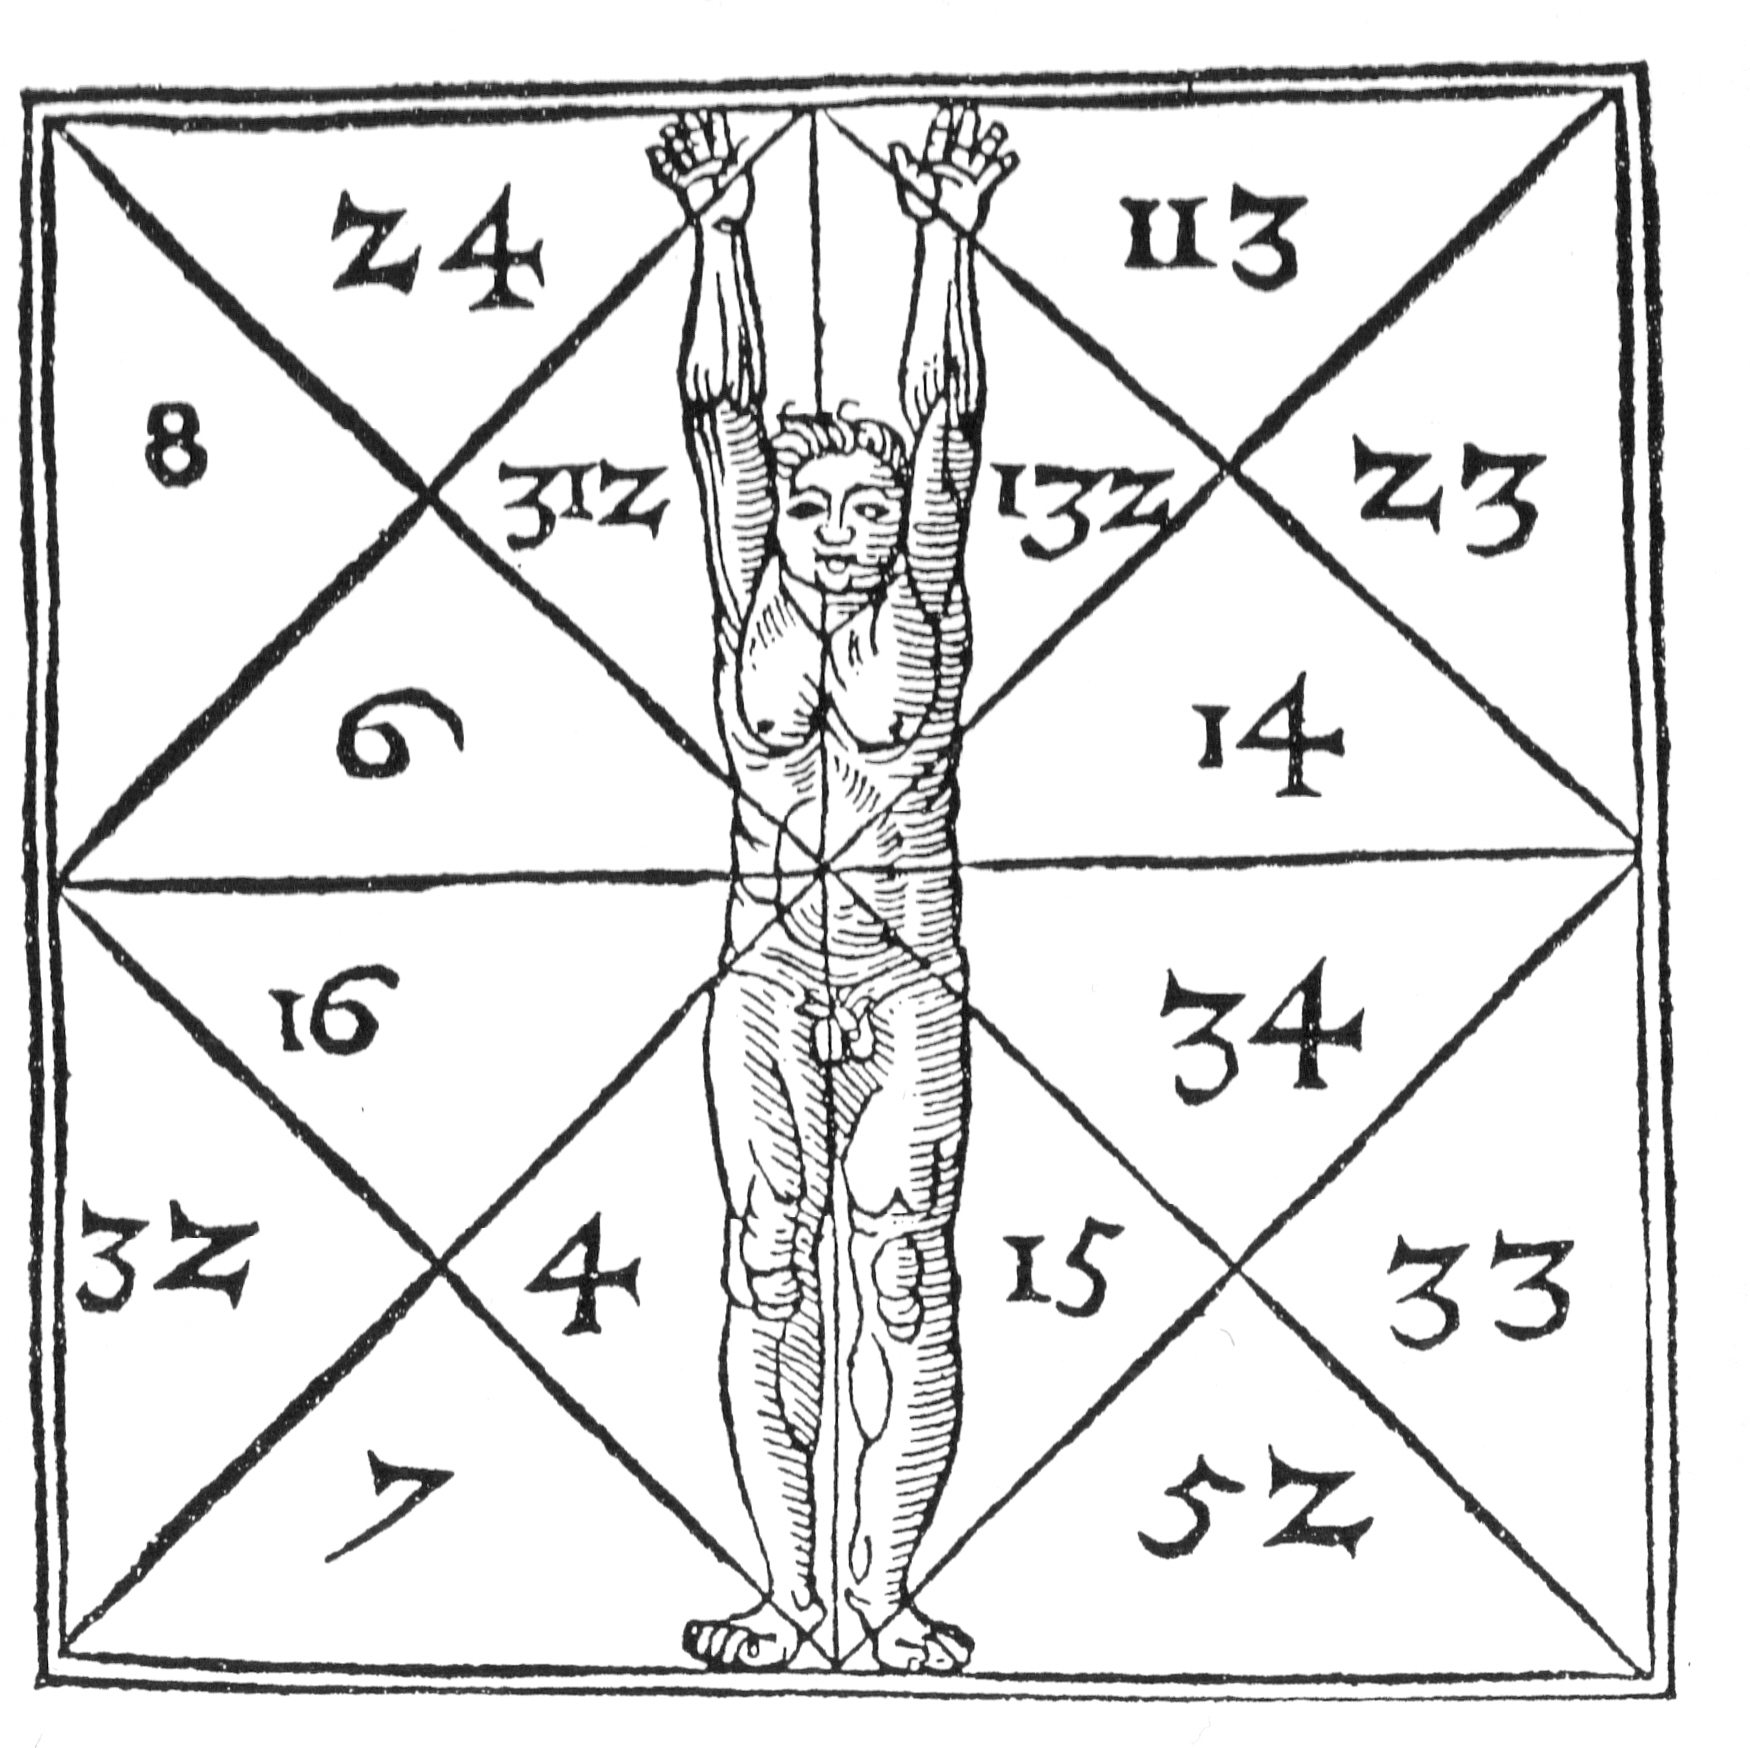 13 13: semnificație angelică și numerologie